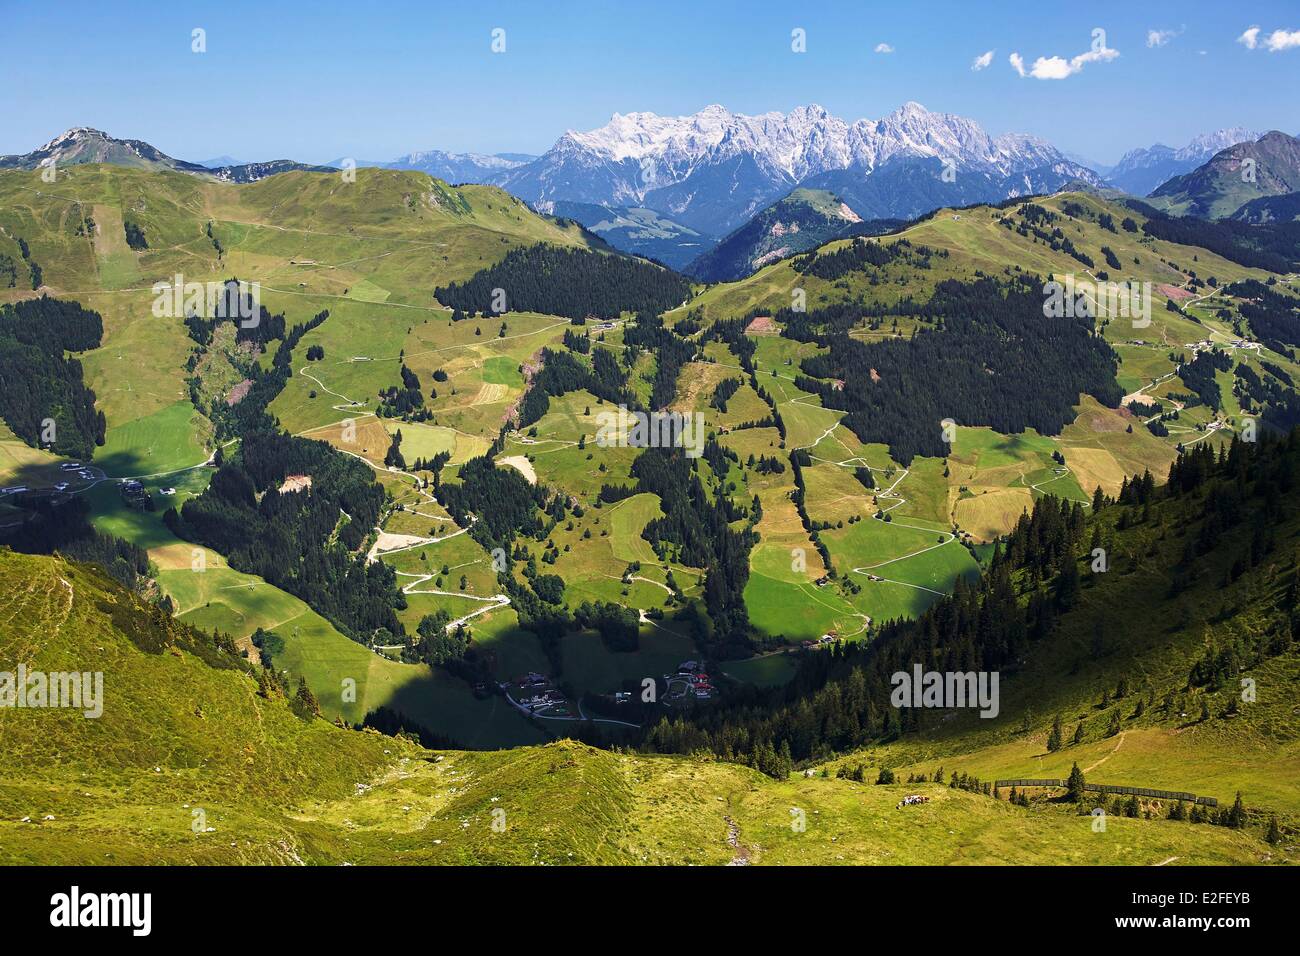 Austria, Land di Salisburgo, Kitzbuhel Alpi, Saalbach Hinterglemm, Saalbach Hinterglemm valle, vista degli Alti Tauri mountain range Foto Stock